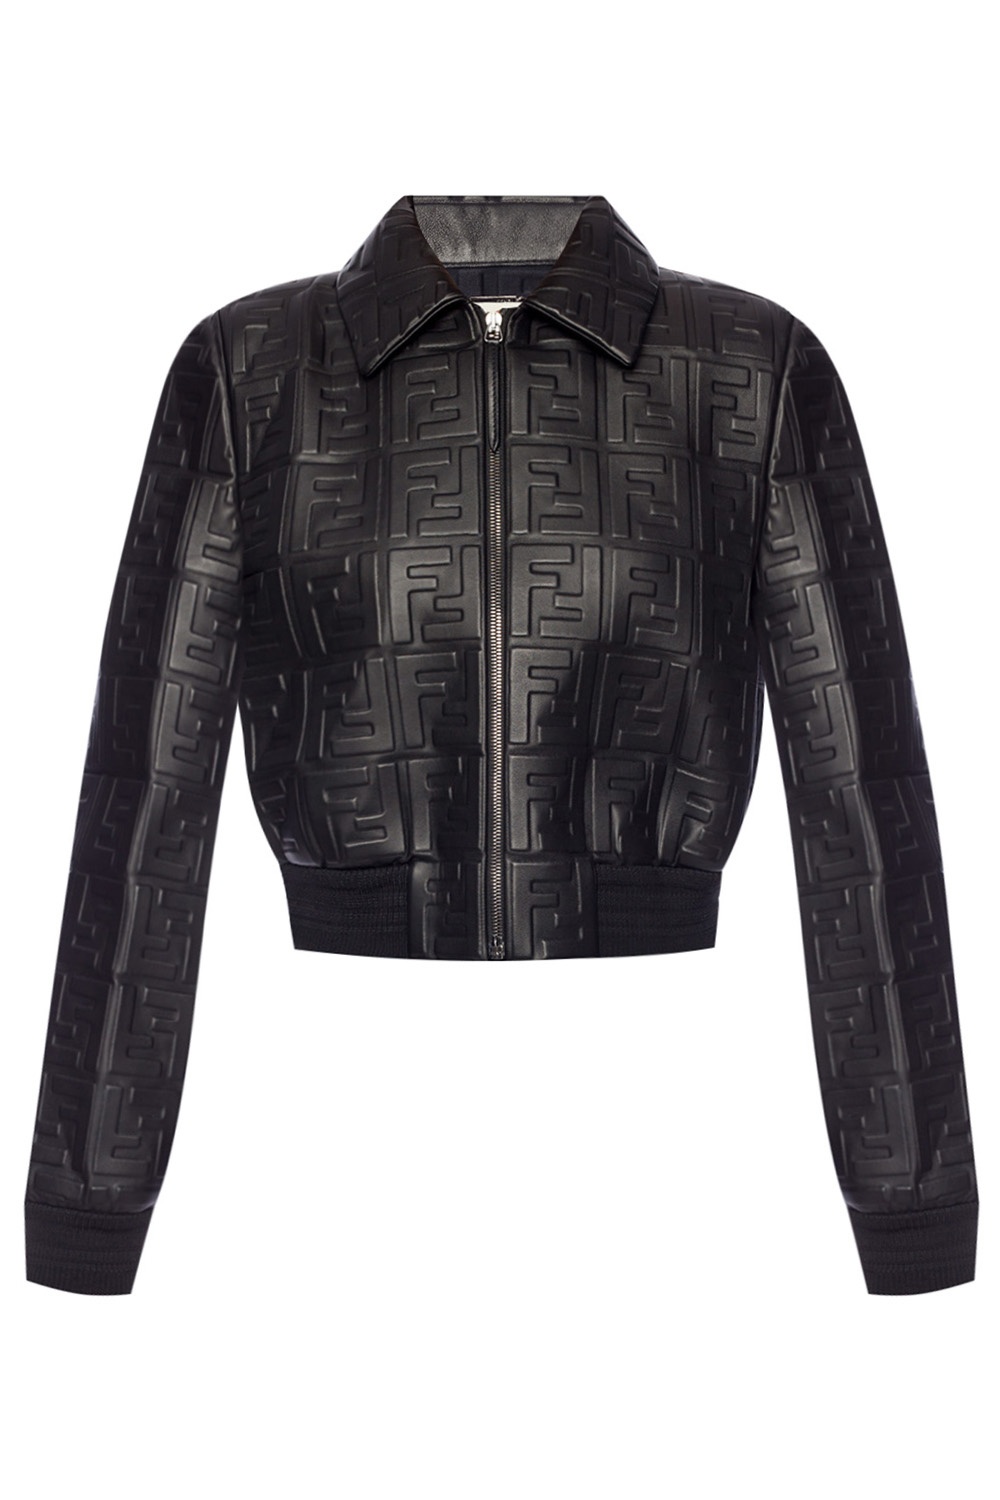 Leather jacket with logo Fendi - Vitkac 